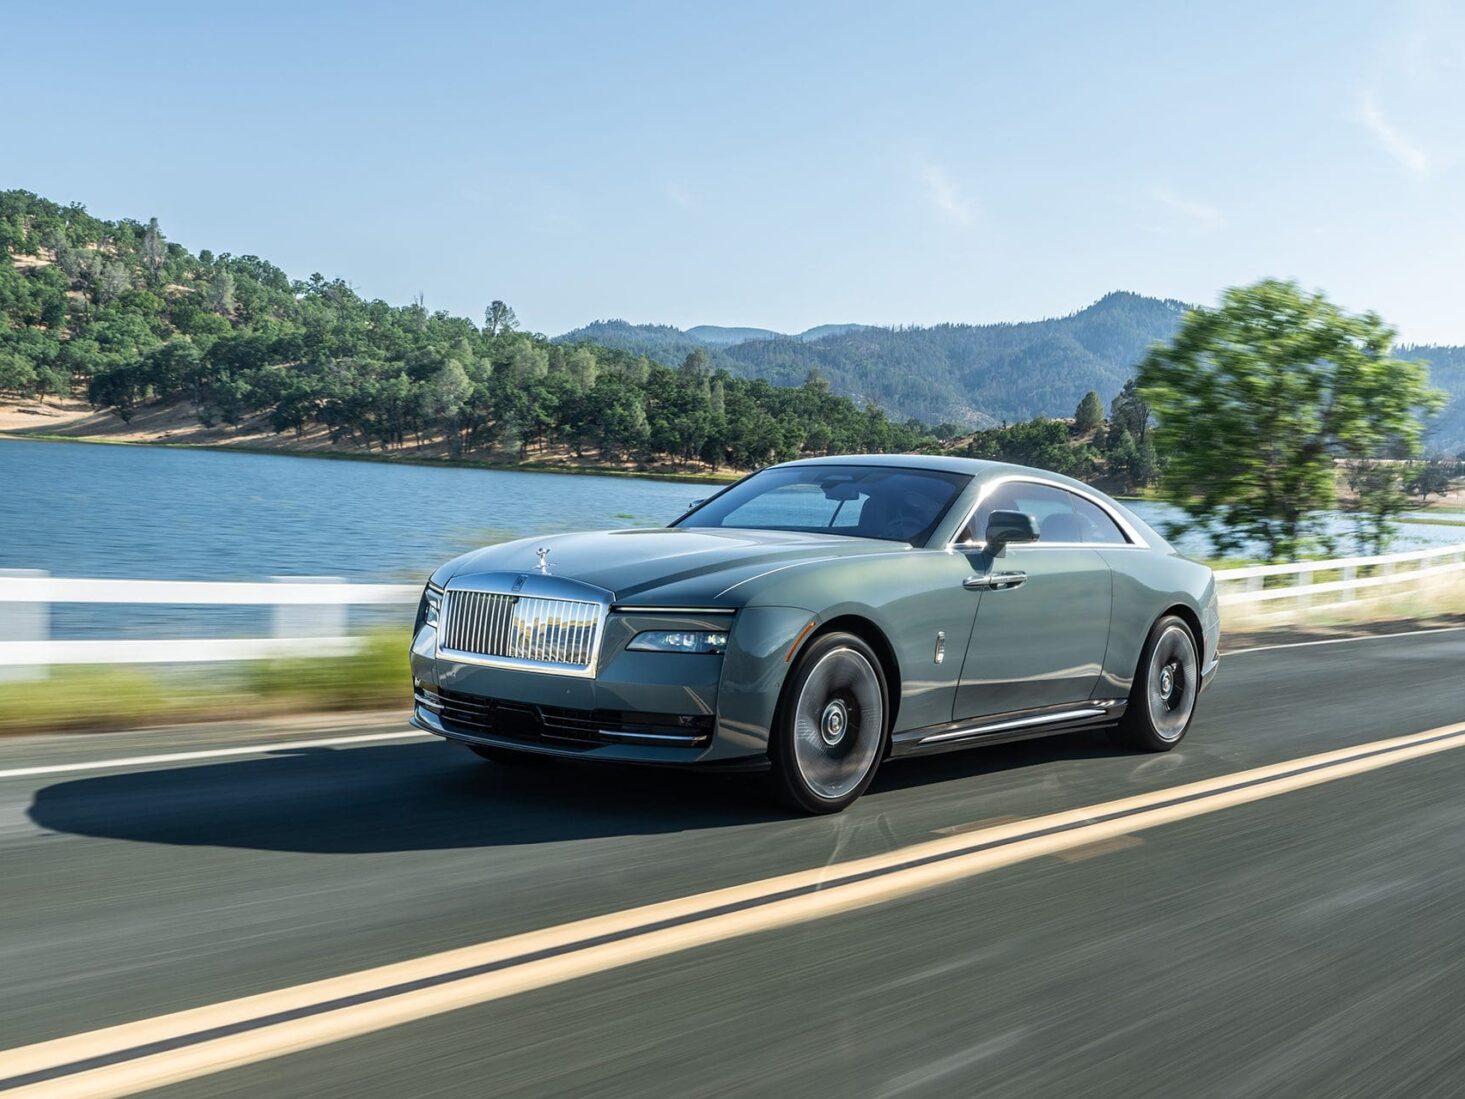 Rolls-Royce Spectre review